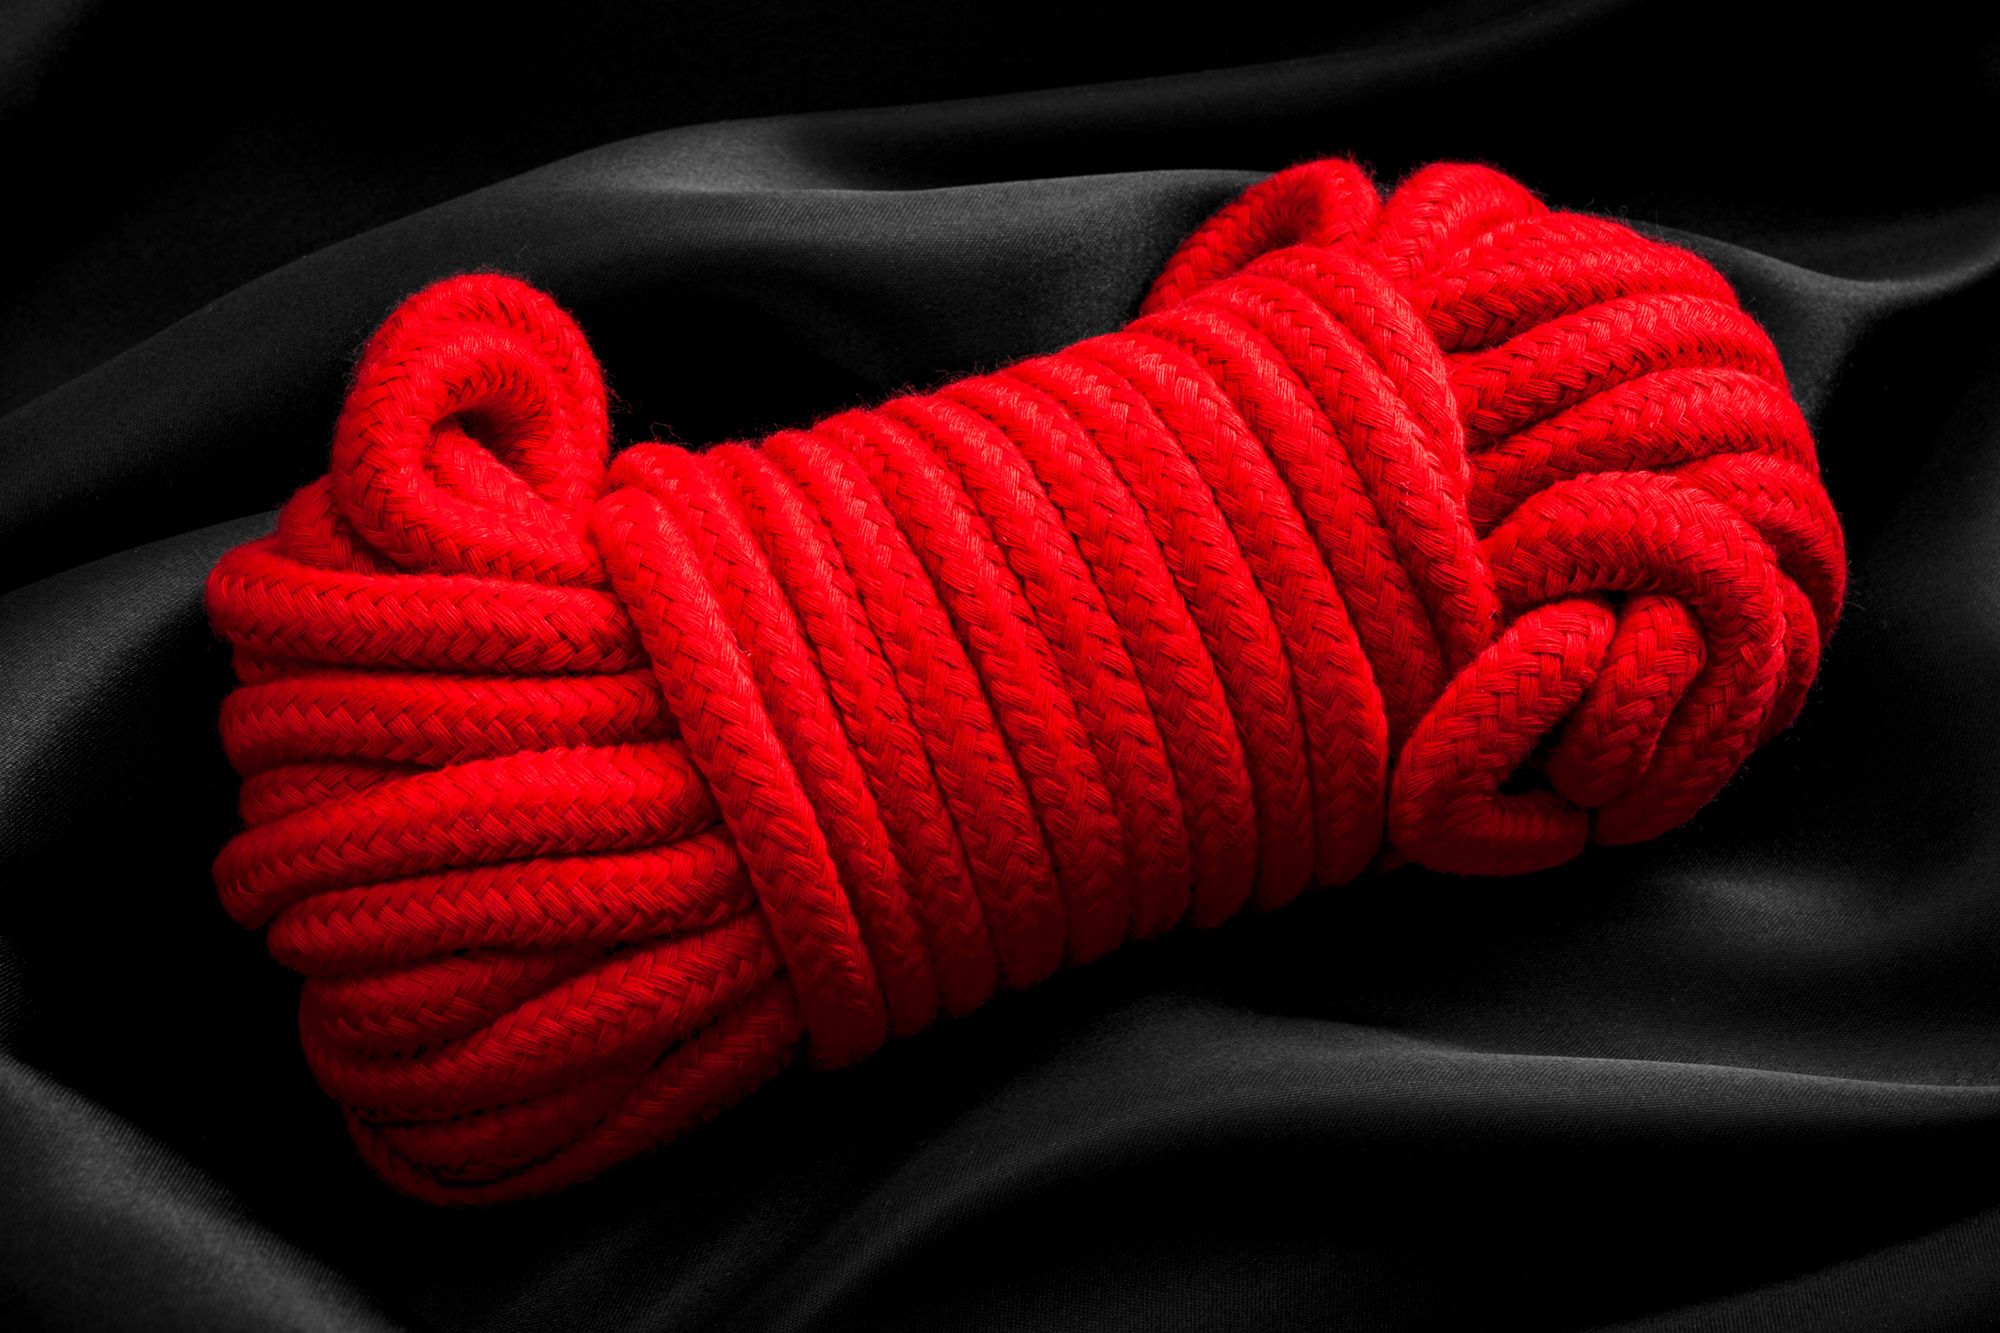 Domina Bondage - Abbildung von einem roten Seil auf einer schwarzen Decke.